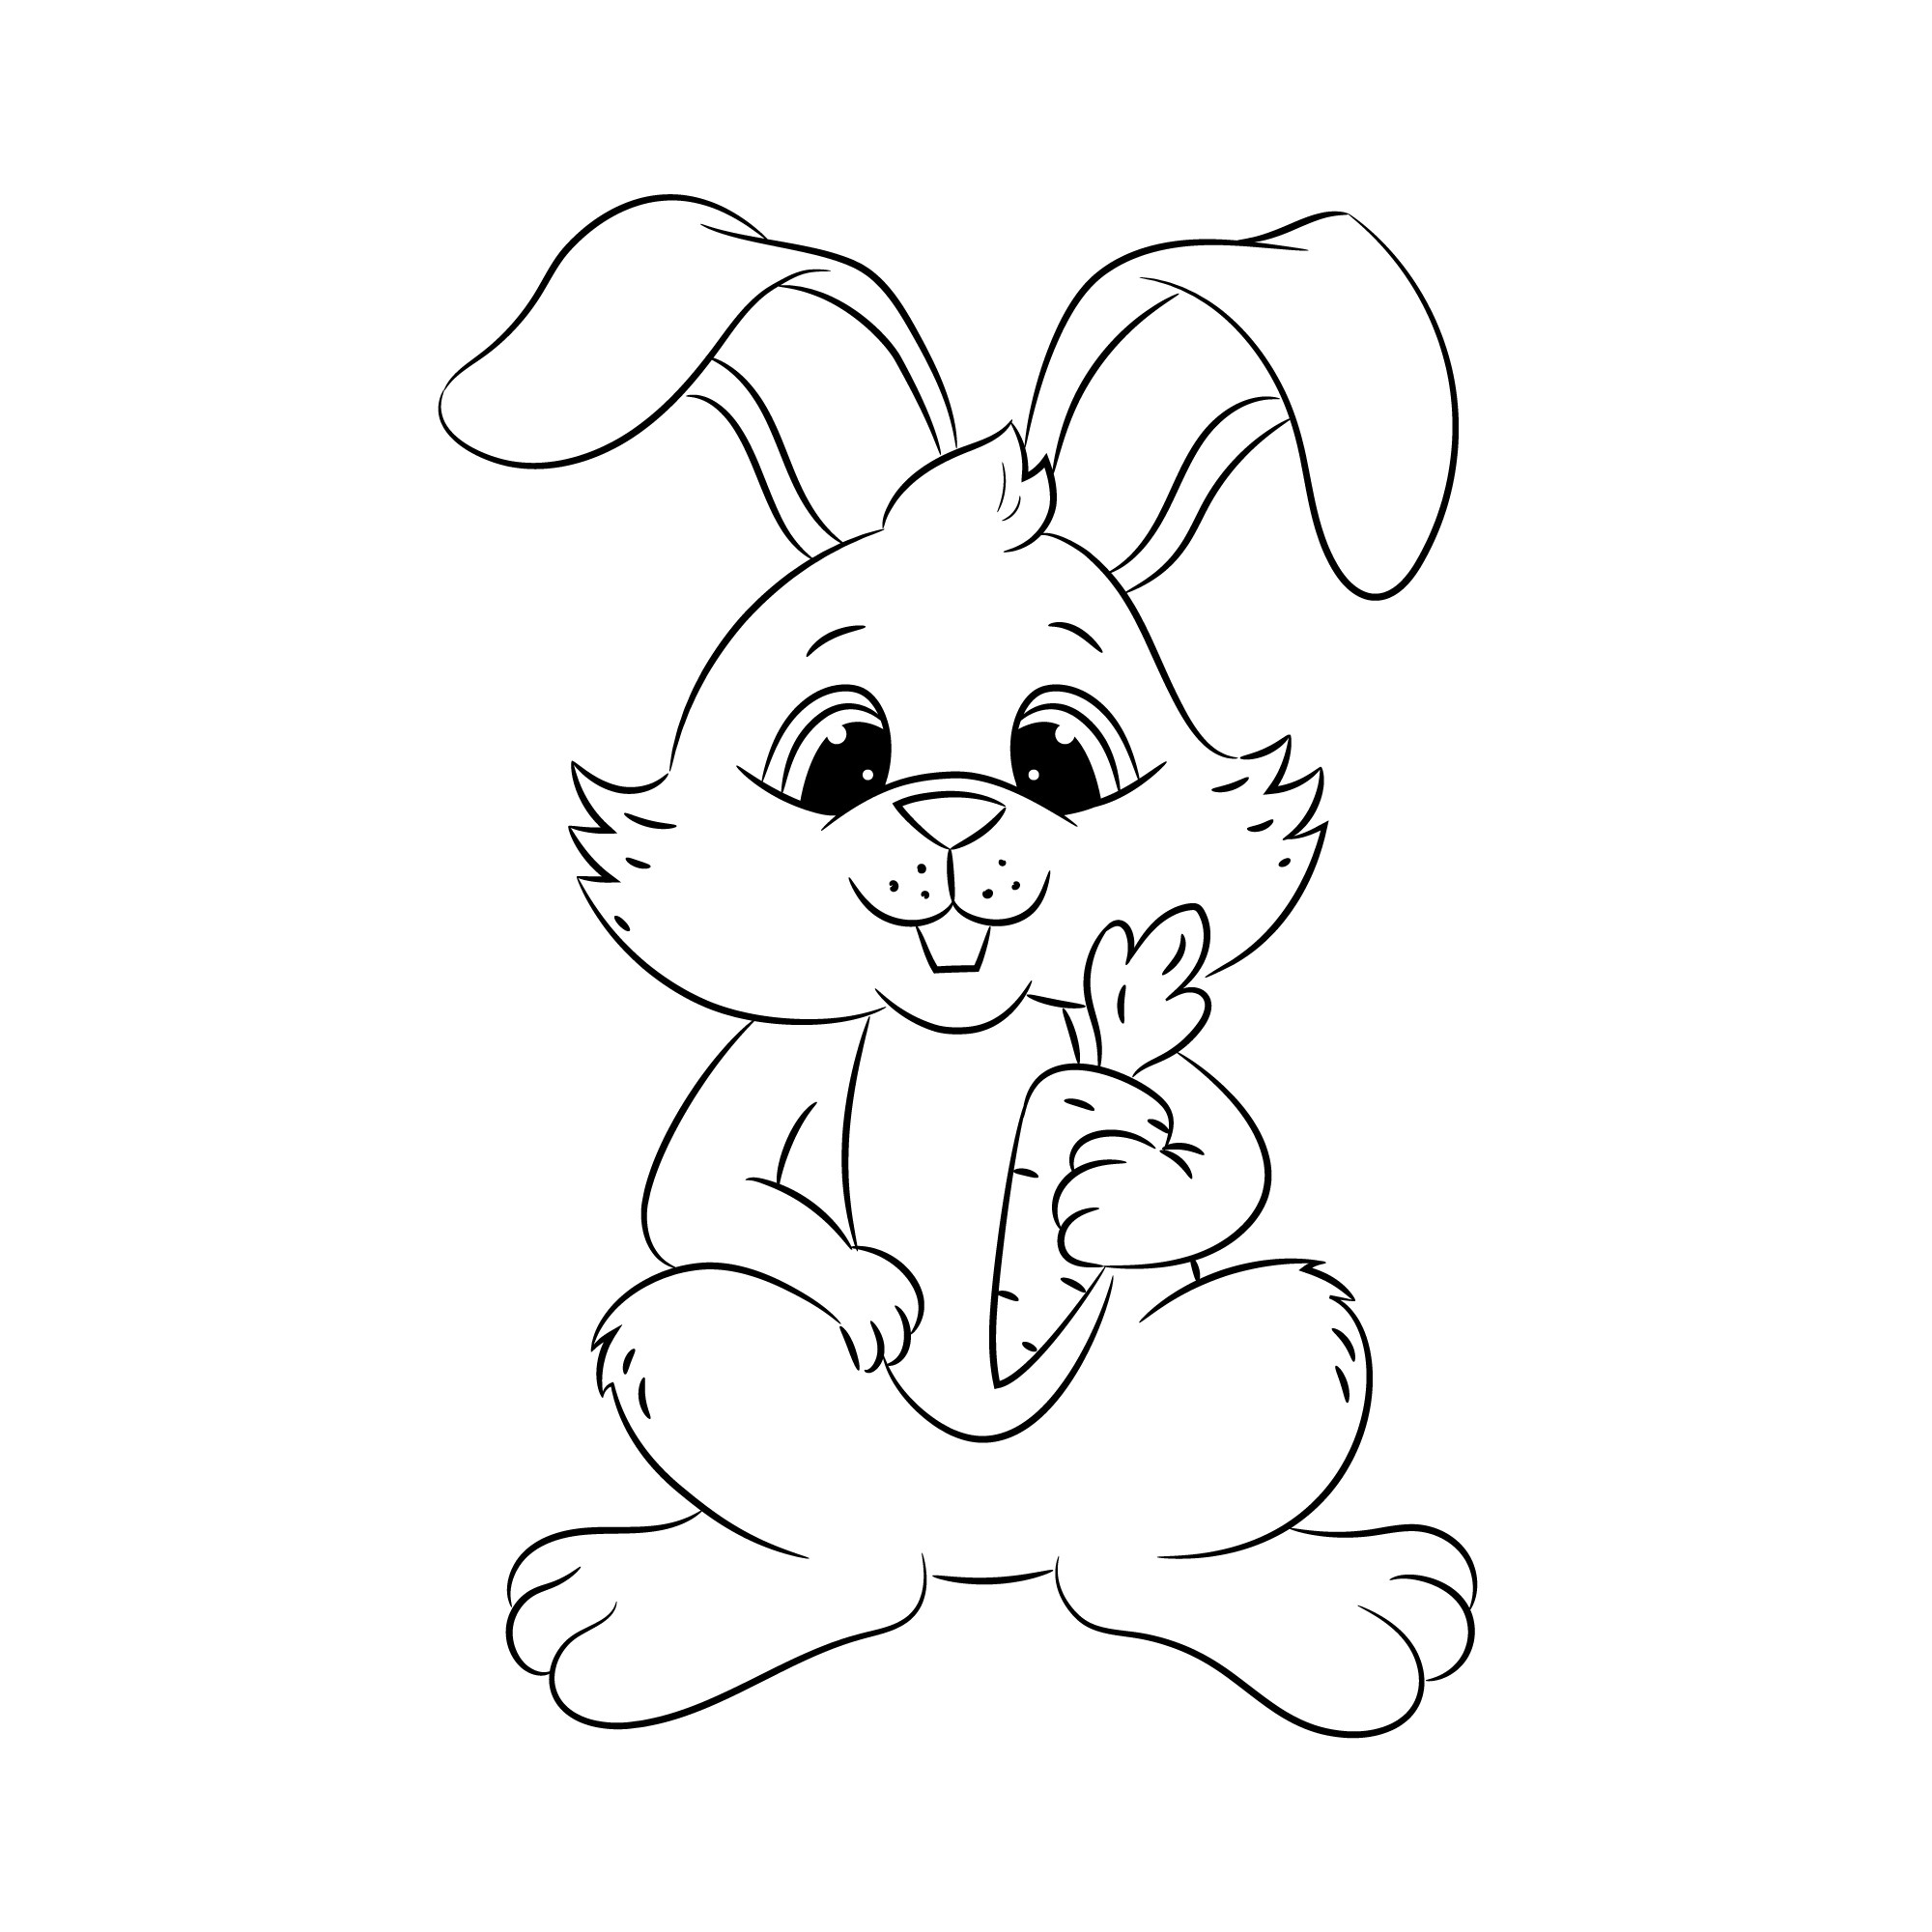 Раскраска для детей: уставший заяц с морковкой